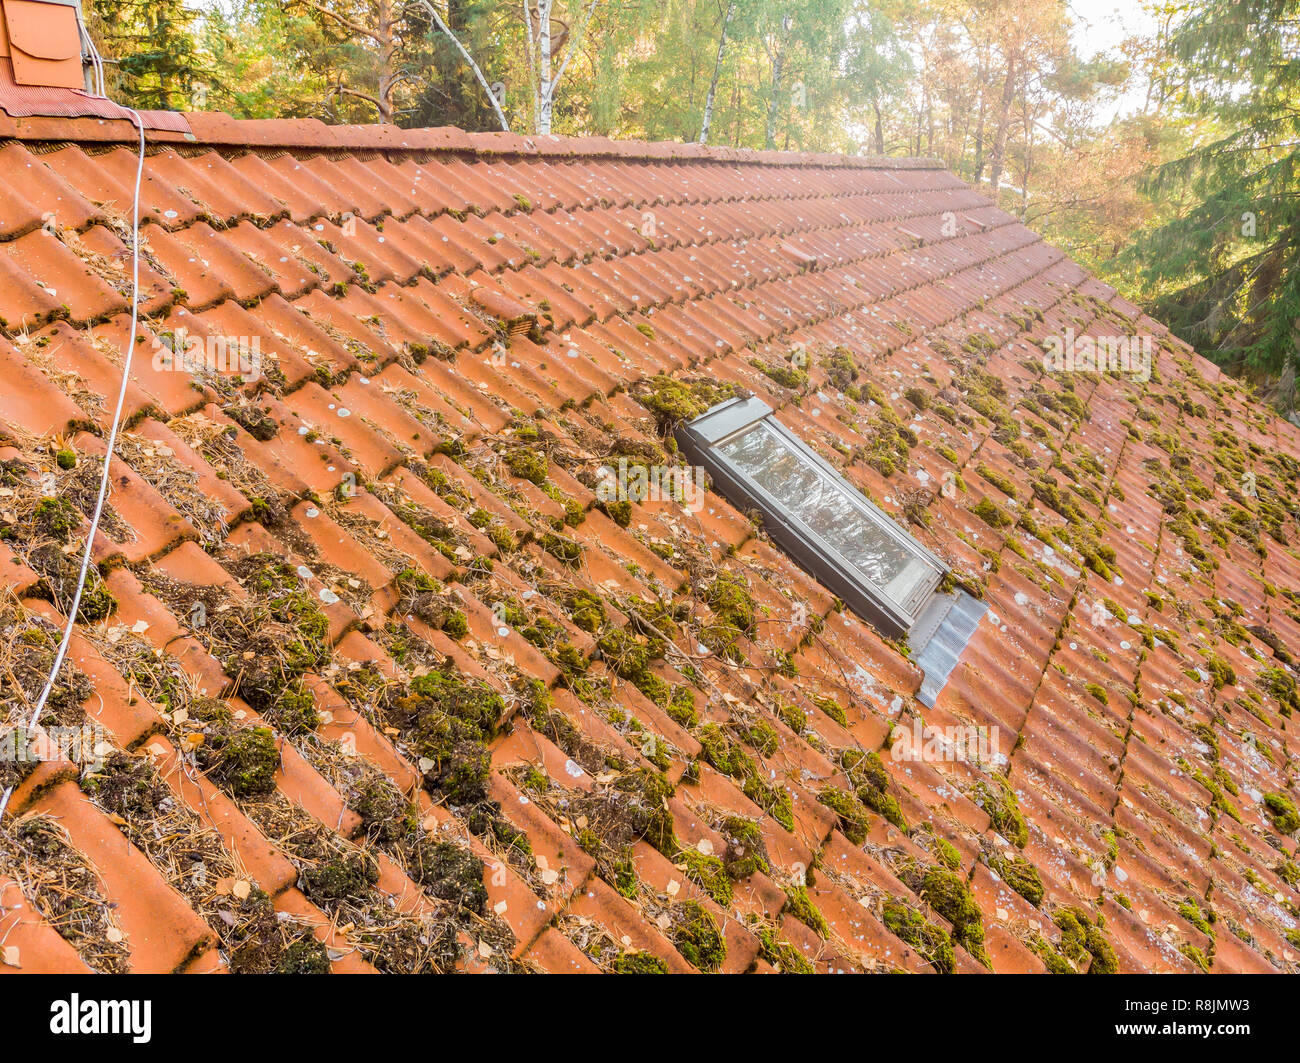 Prüfung der roten Ziegeldach eines Einfamilienhaus, die Fliesen auf einem Dach Seite. Stockfoto